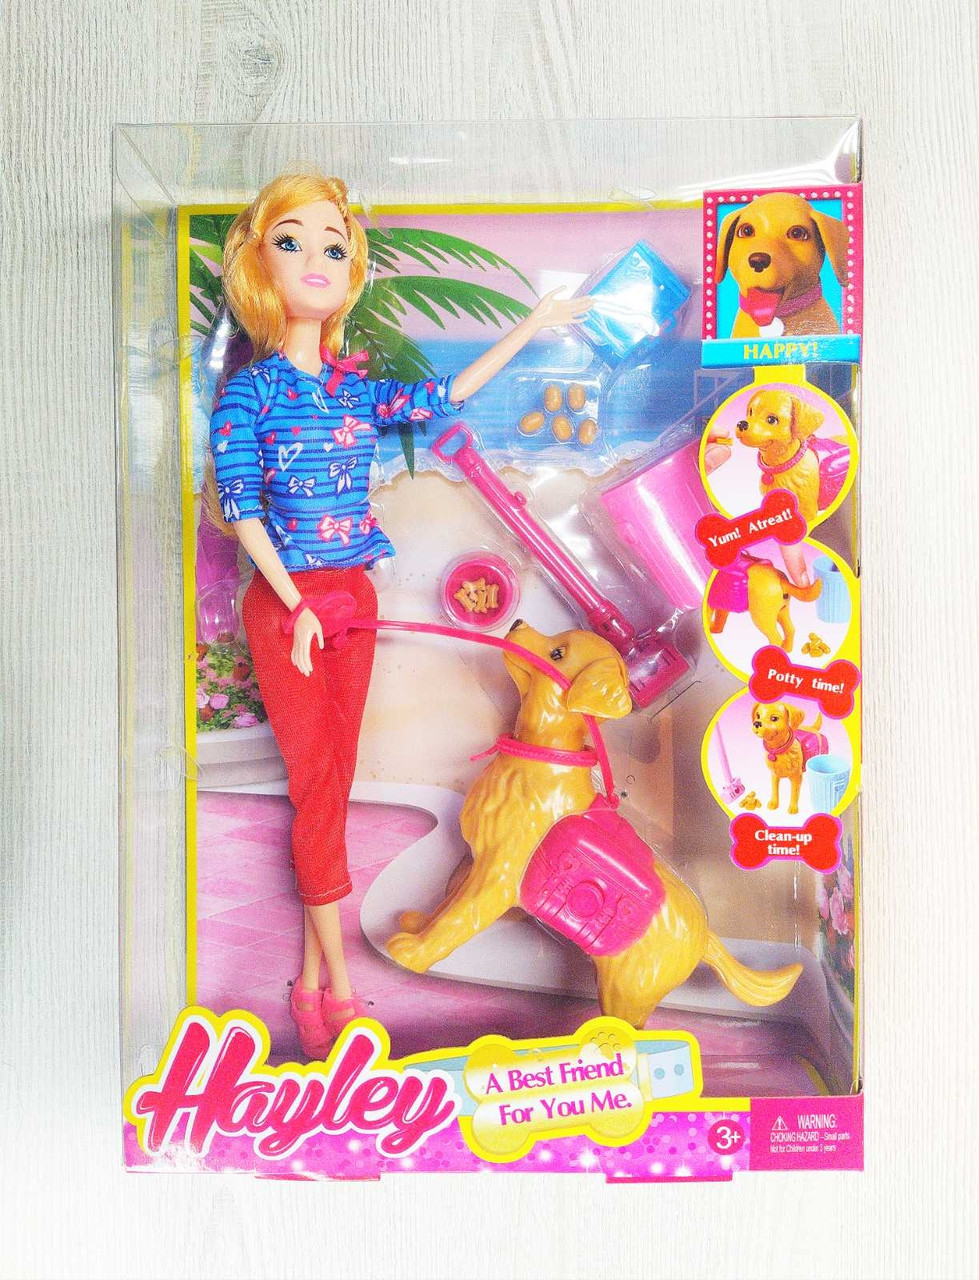 Кукла Hayley с собакой  и аксессуарами, рост 29 см,  арт.HB029